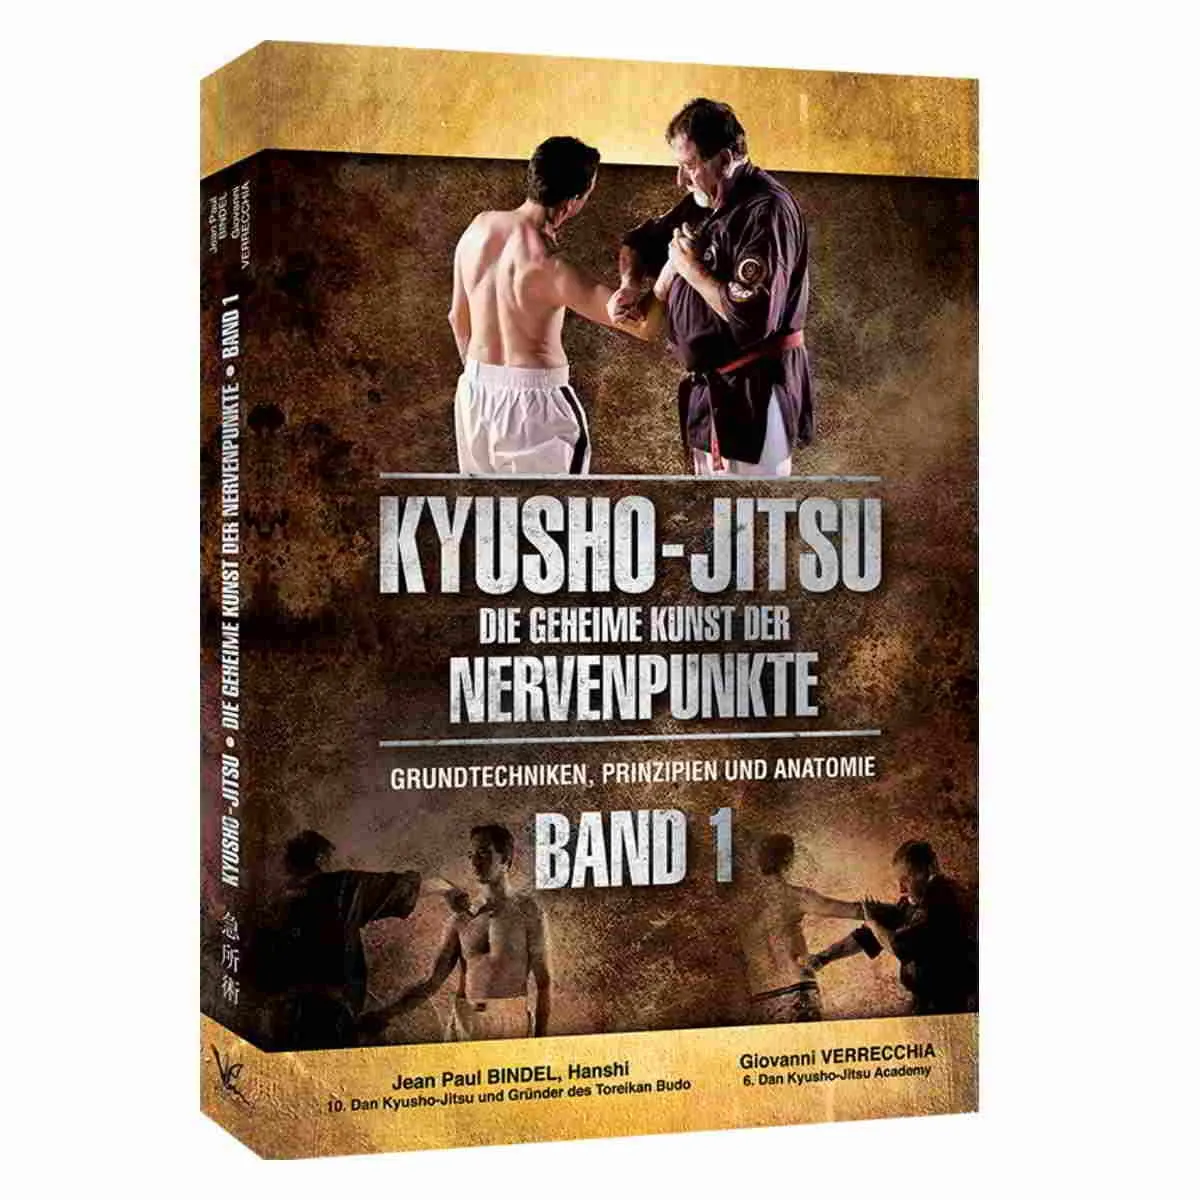 Kyusho Jitsu - The Art of Nerve Points Volume 1